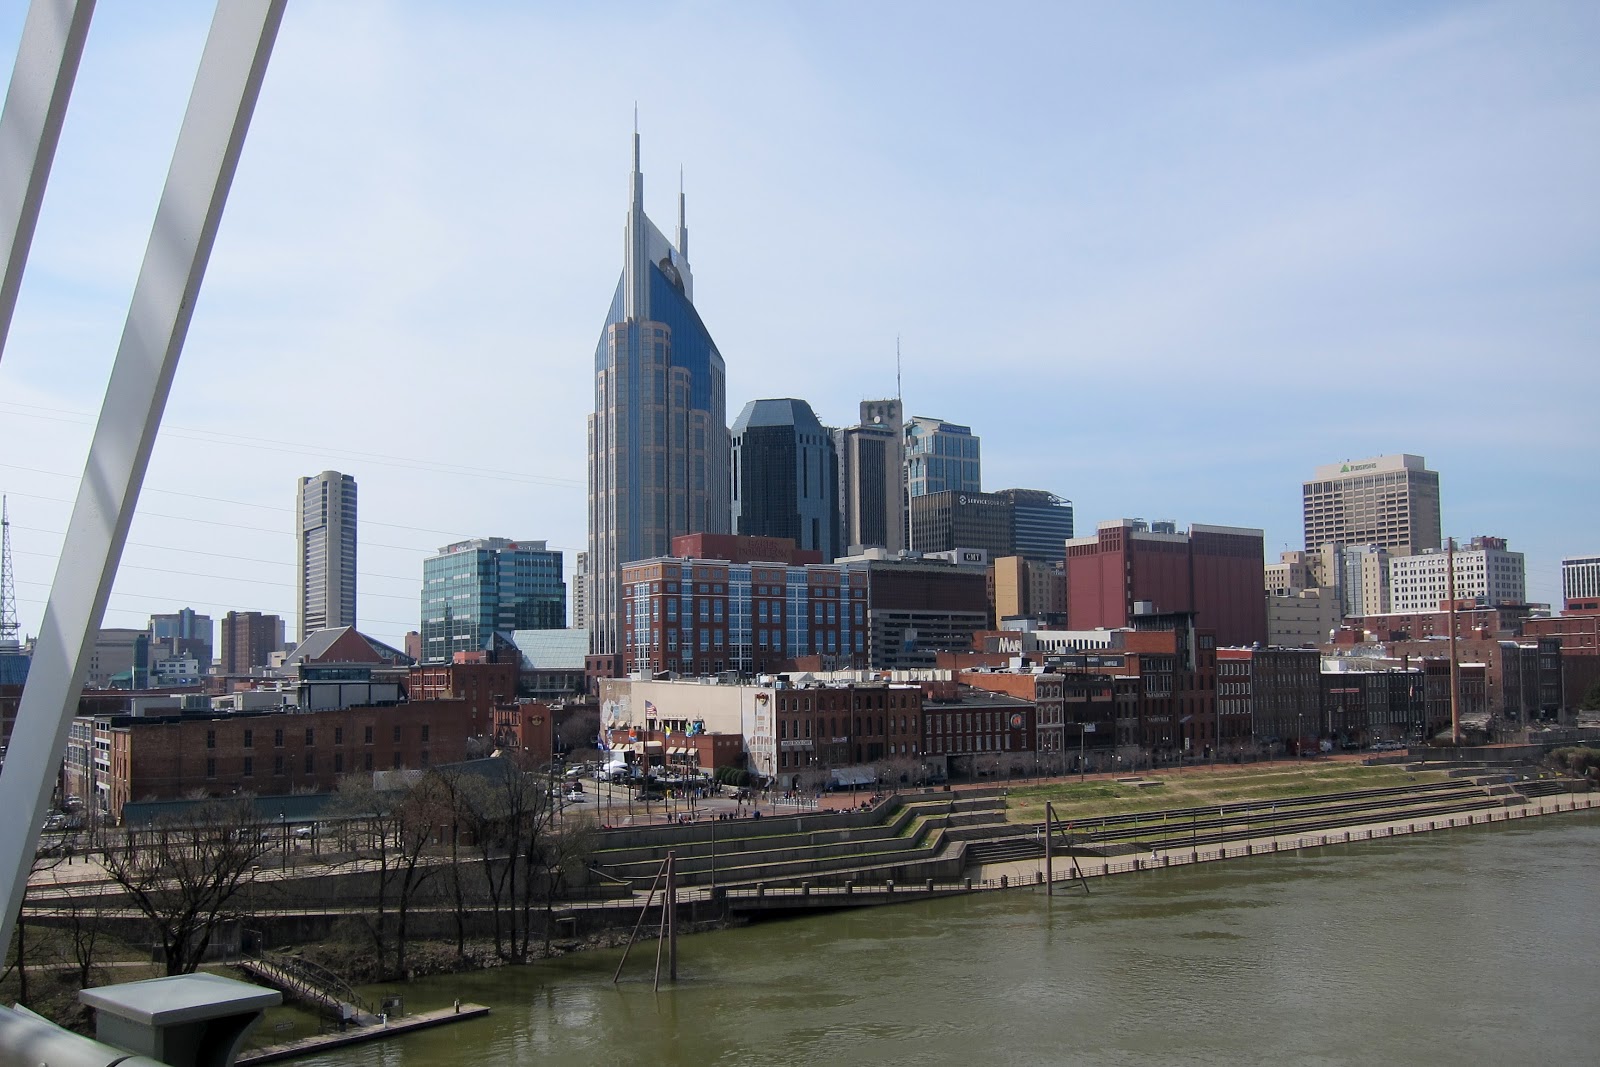 A Visit to Nashville